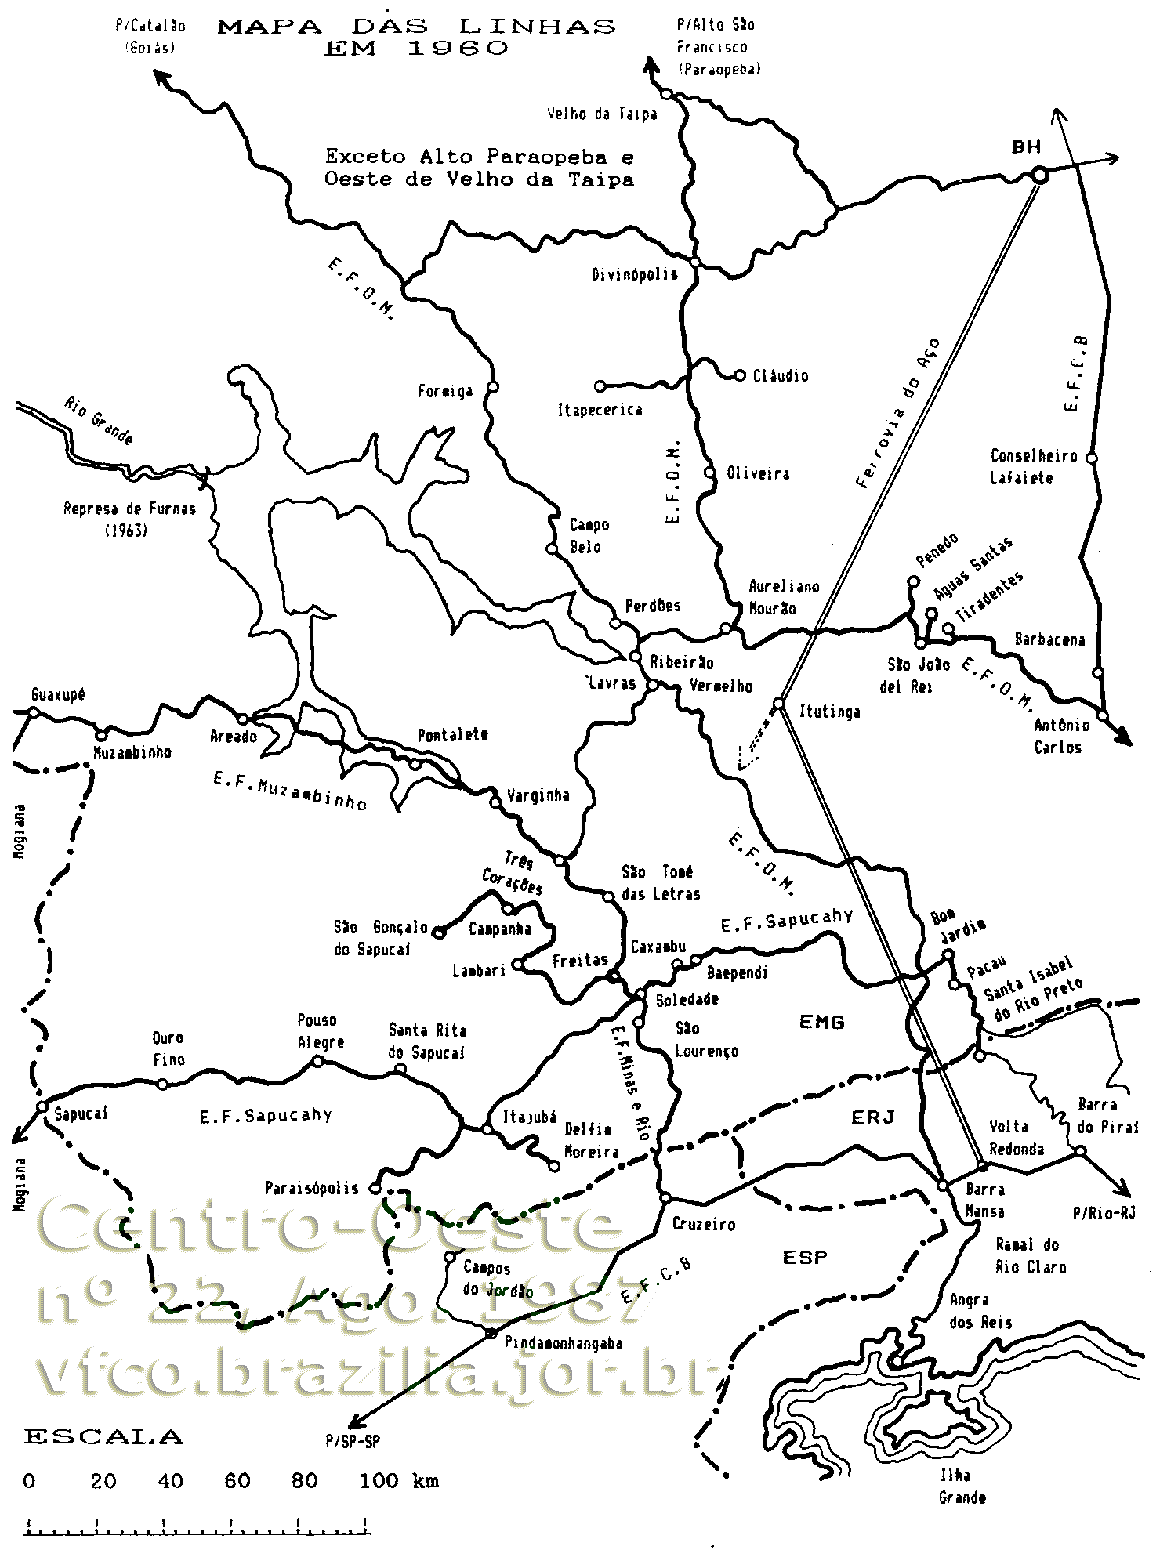 Mapa ferroviário (parcial) dos trilhos da Rede Mineira de Viação por volta de 1960